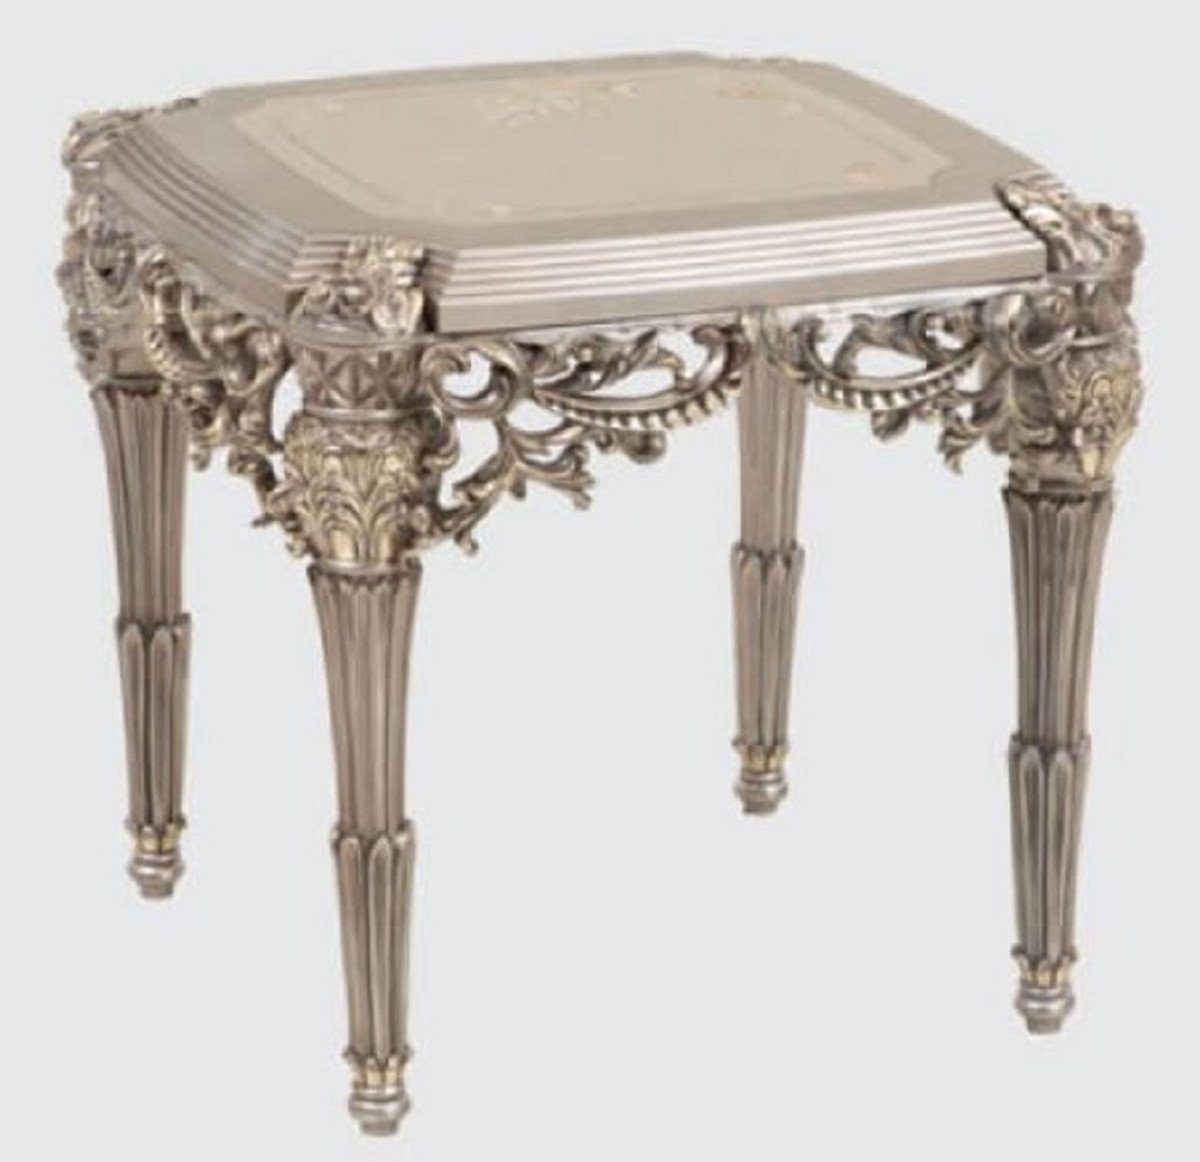 Casa Padrino Beistelltisch Luxus Barock Beistelltisch Silber / Gold 65 x 65 x H. 65 cm - Handgefertigter Massivholz Tisch im Barockstil - Barock Möbel